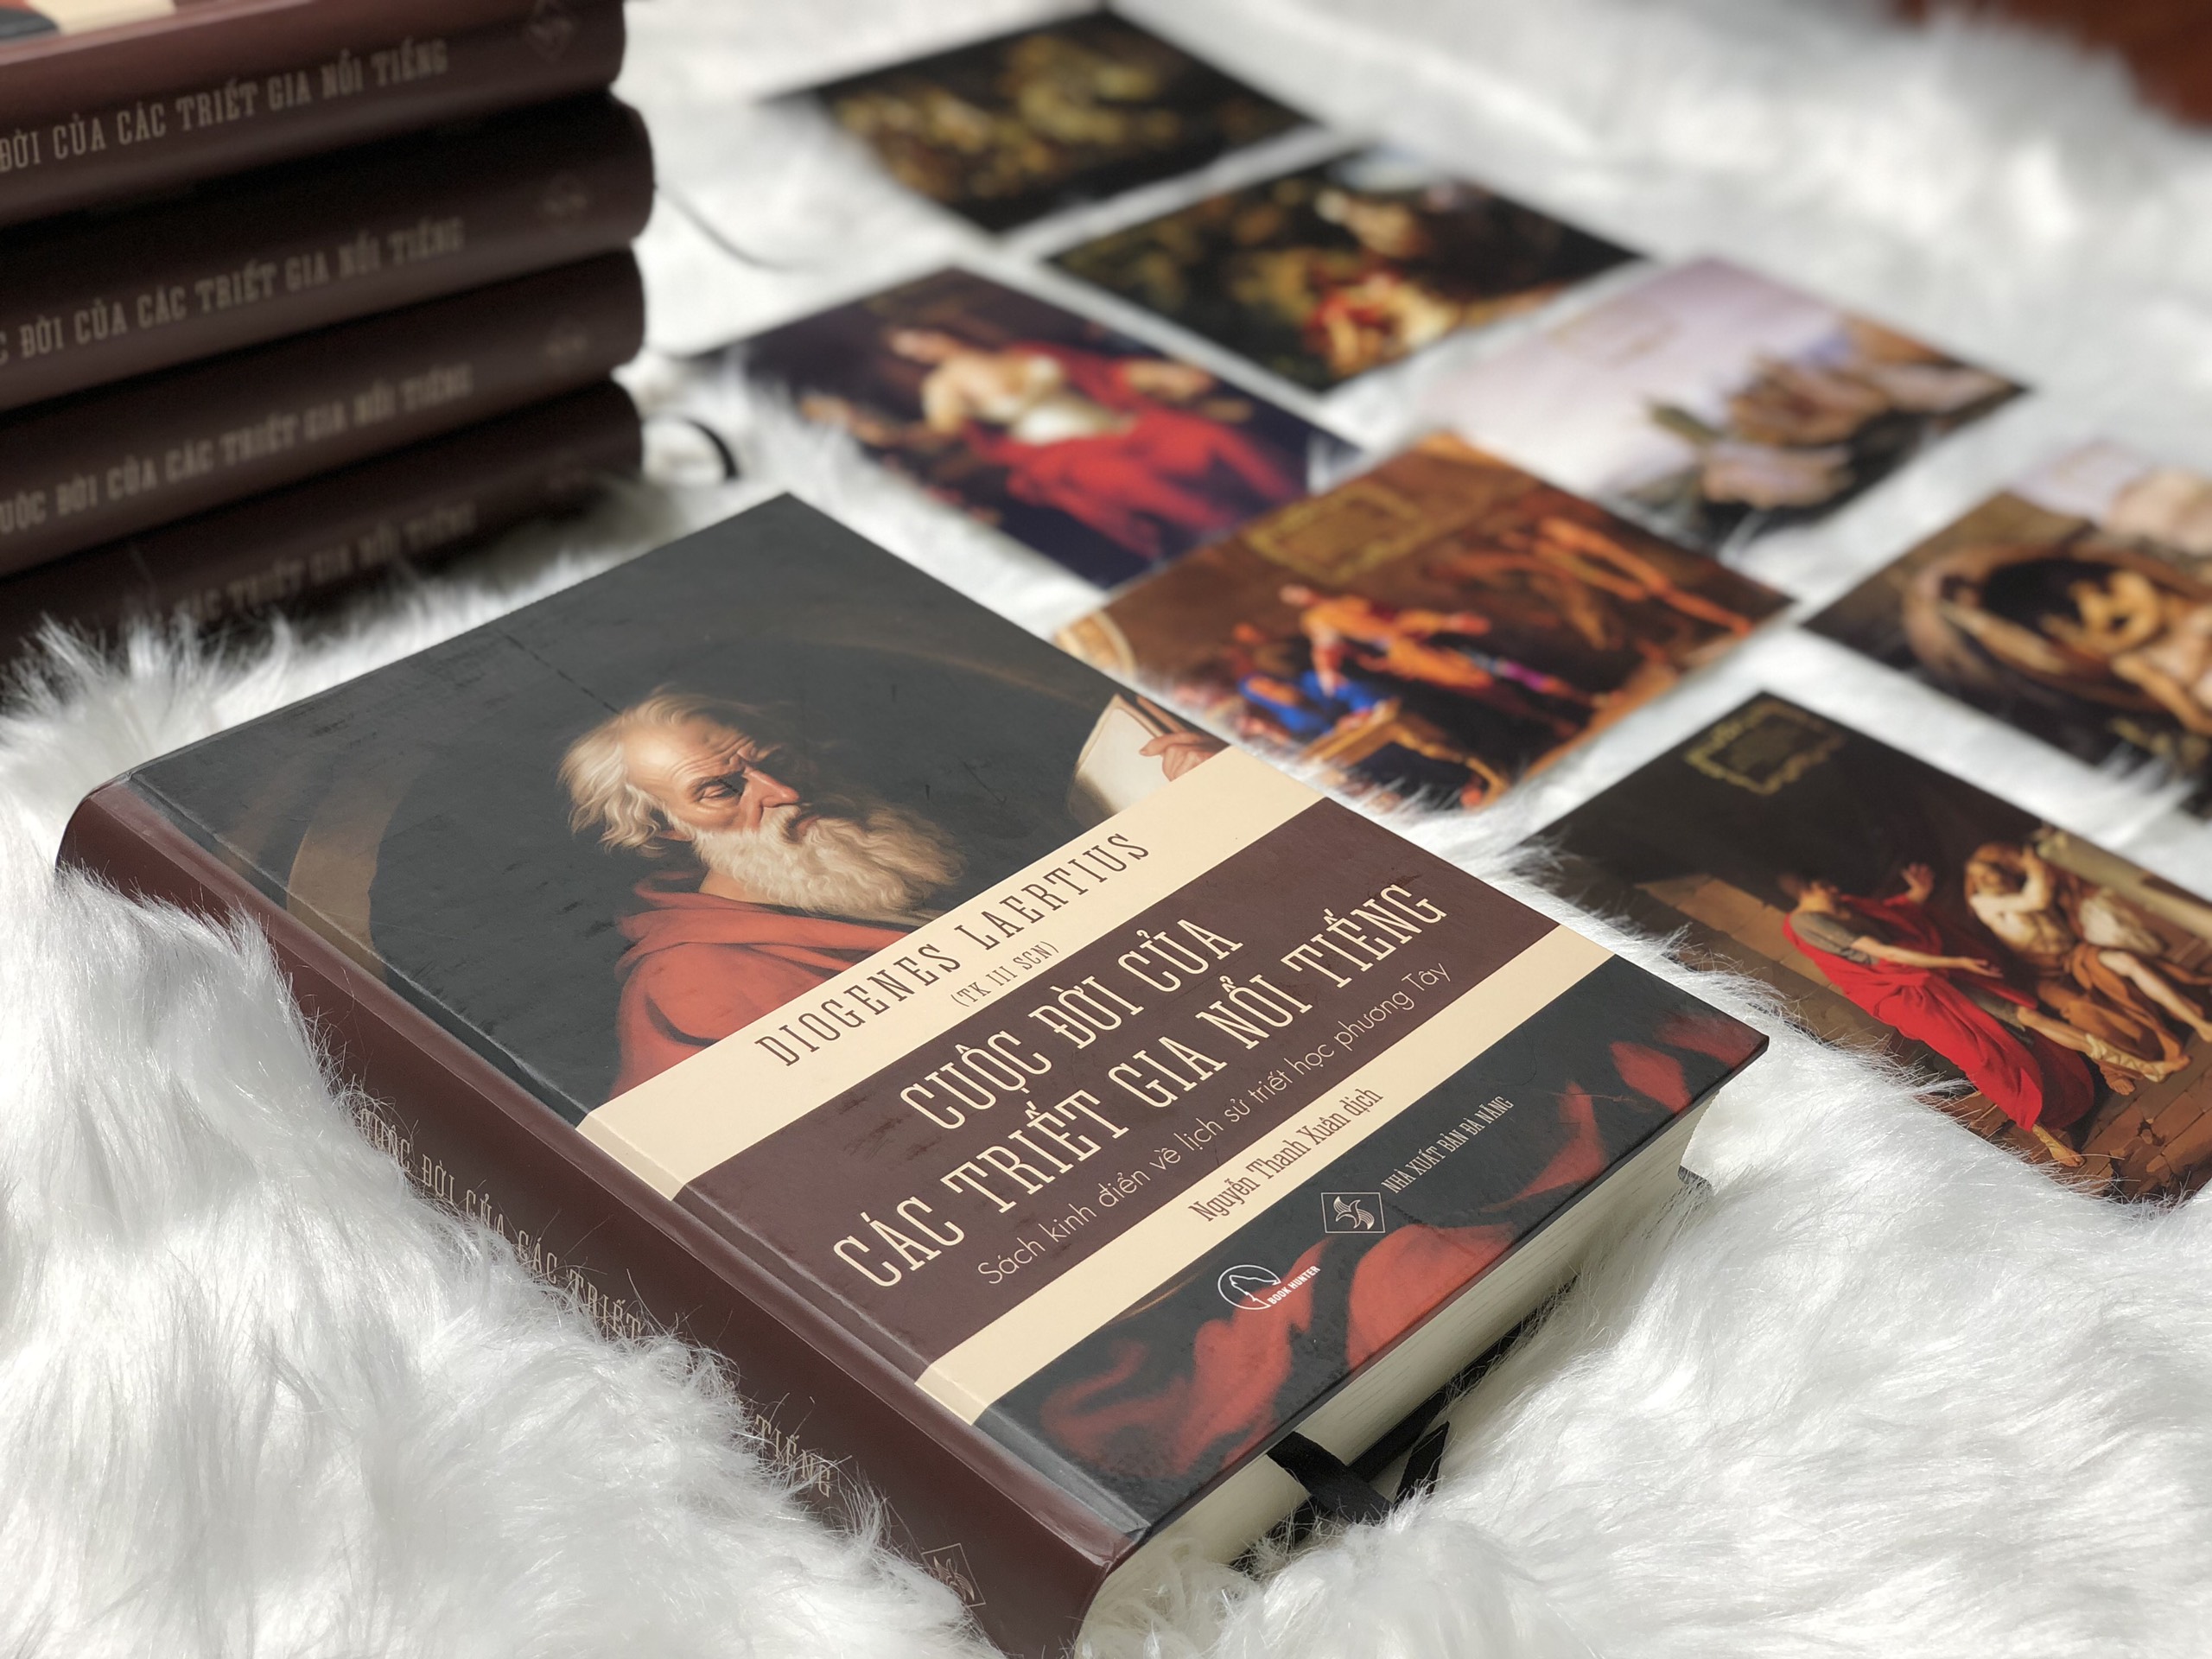 CUỘC ĐỜI CÁC TRIẾT GIA NỔI TIẾNG – Sách kinh điển về lịch sử triết học phương Tây – Diogenes Laërtius - BÌA CỨNG